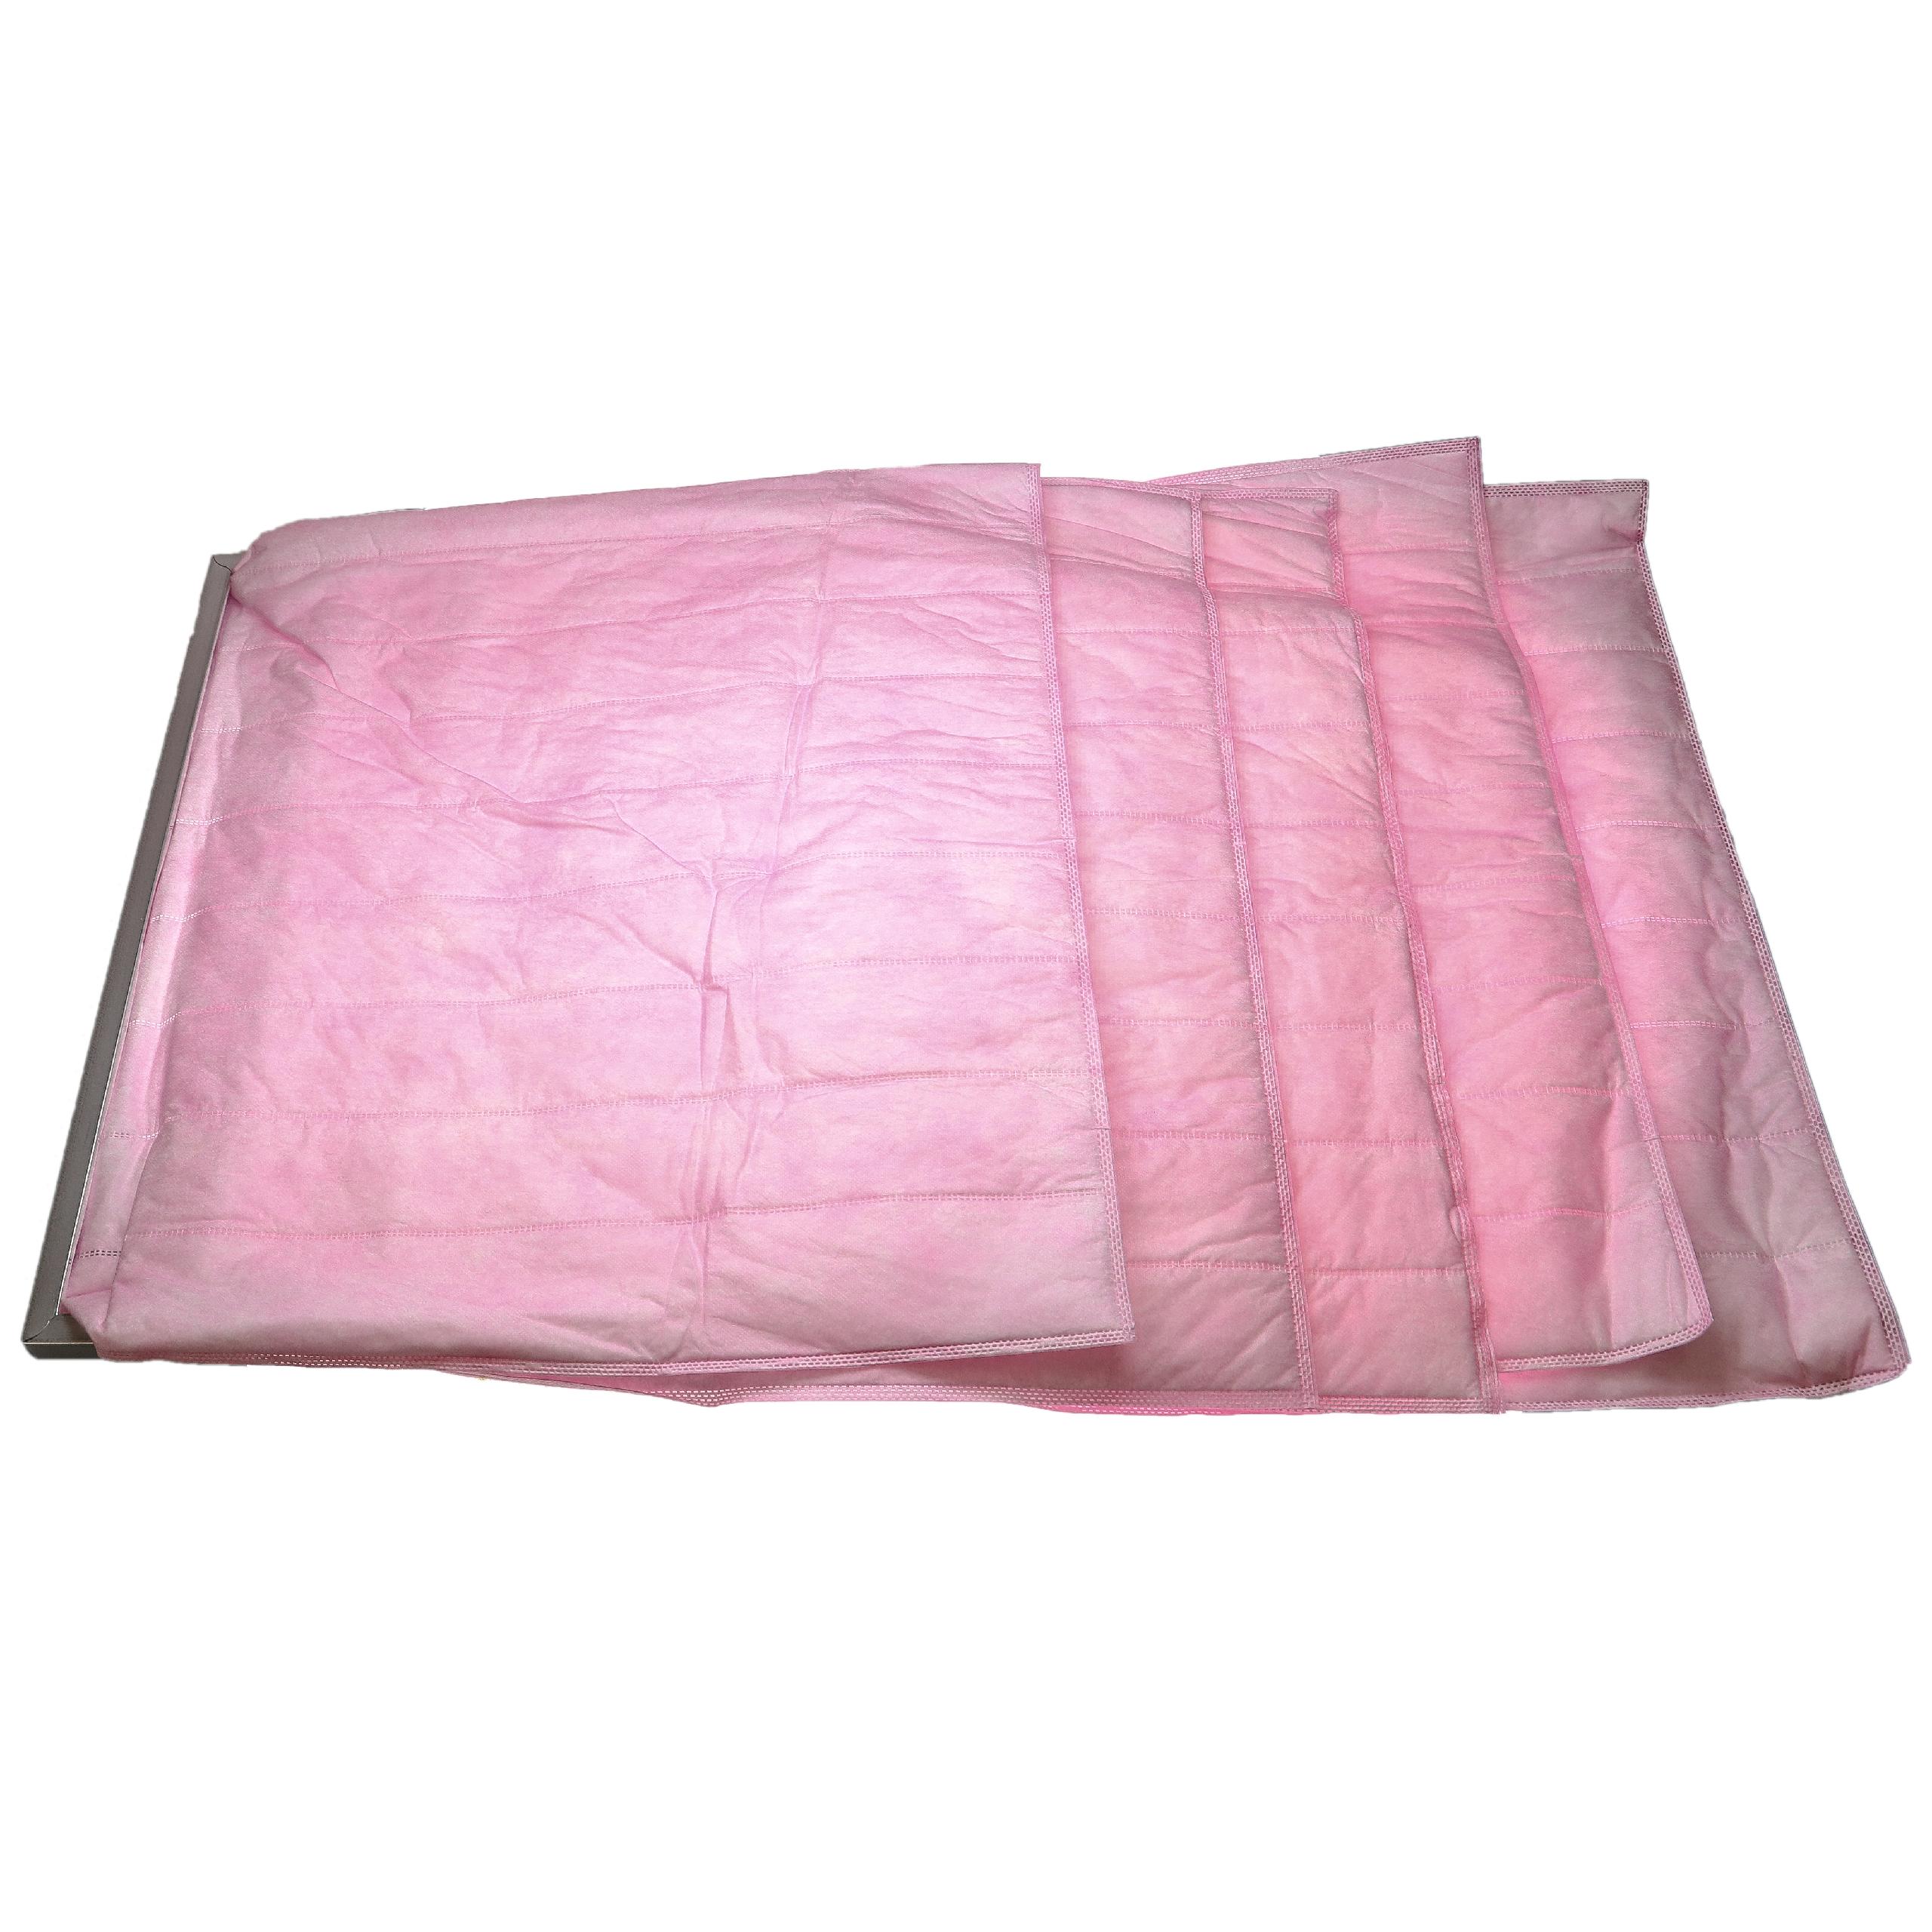 Taschenfilter F7 passend für Klimaanlagen, Lüftungsanlagen - 60 x 49 x 59,2 cm